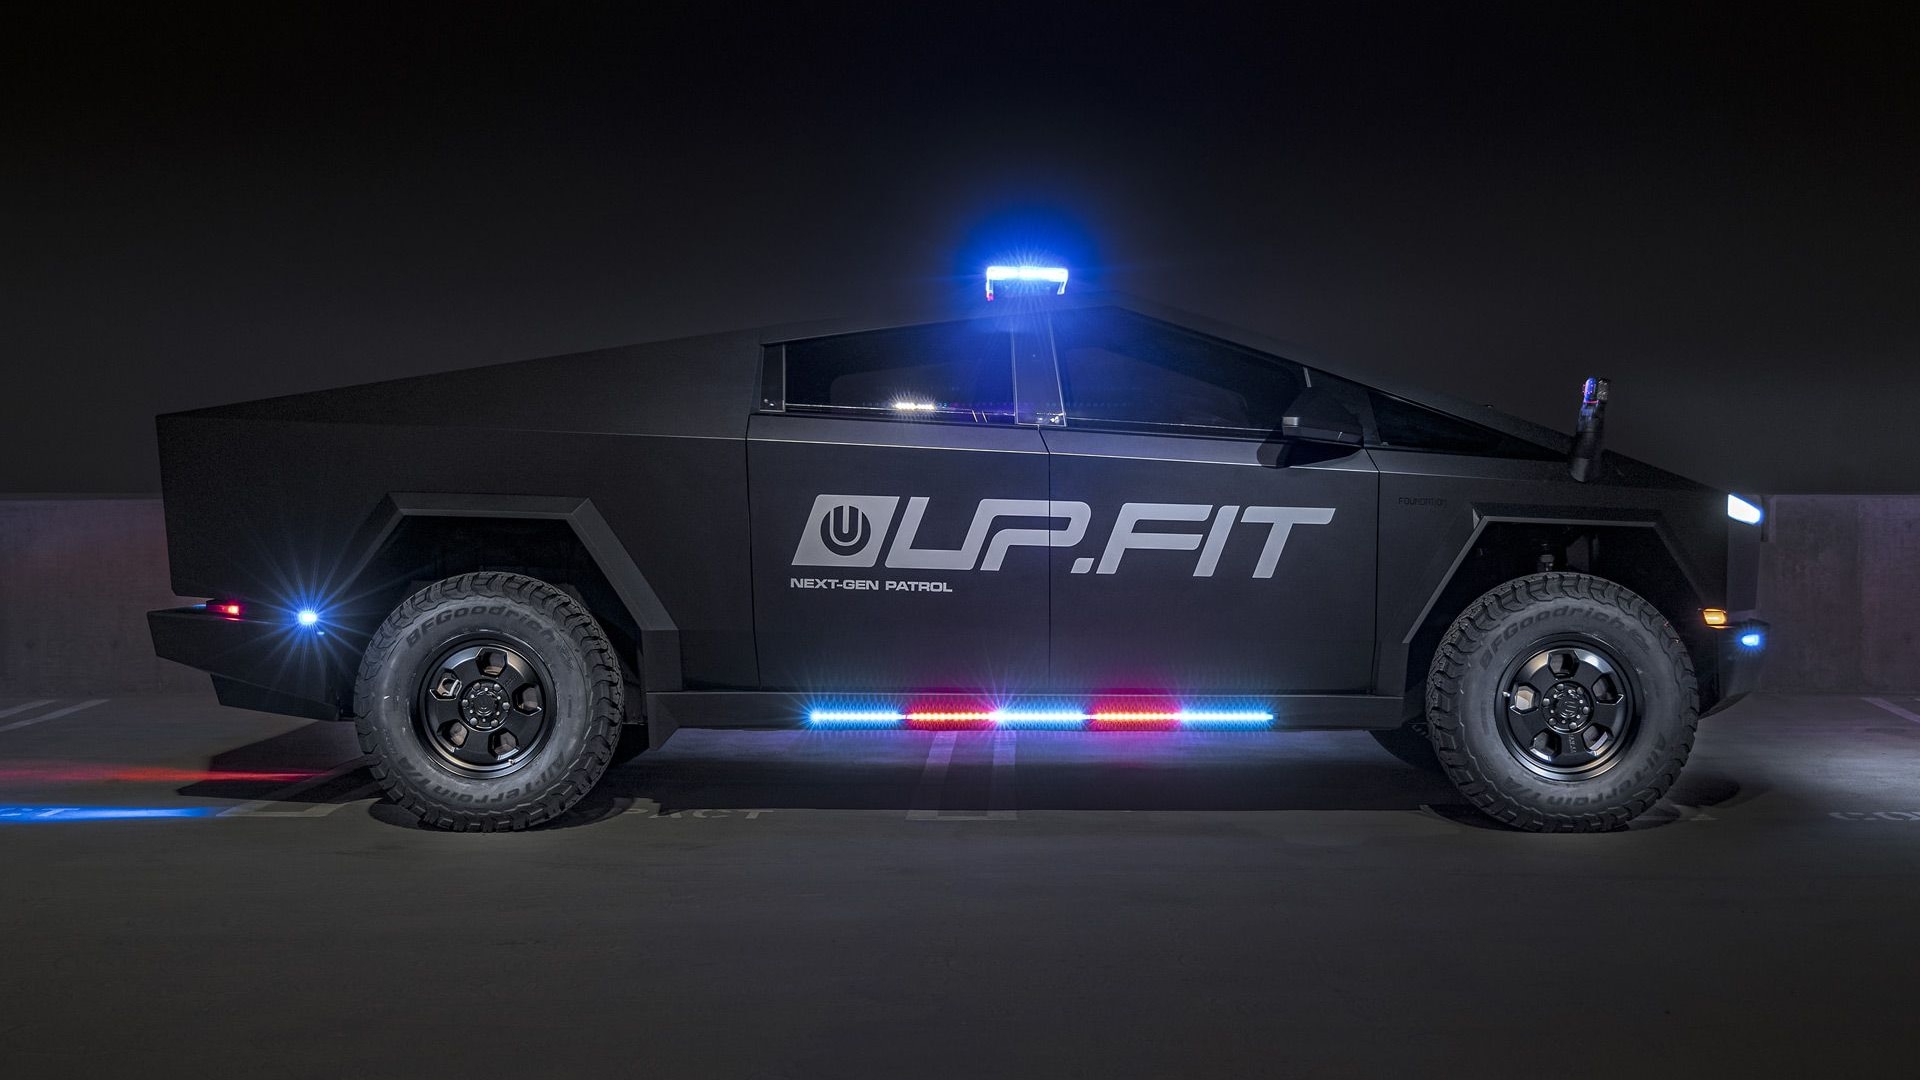 Tesla Cybertruck Next-Gen Patrol by UP.FIT